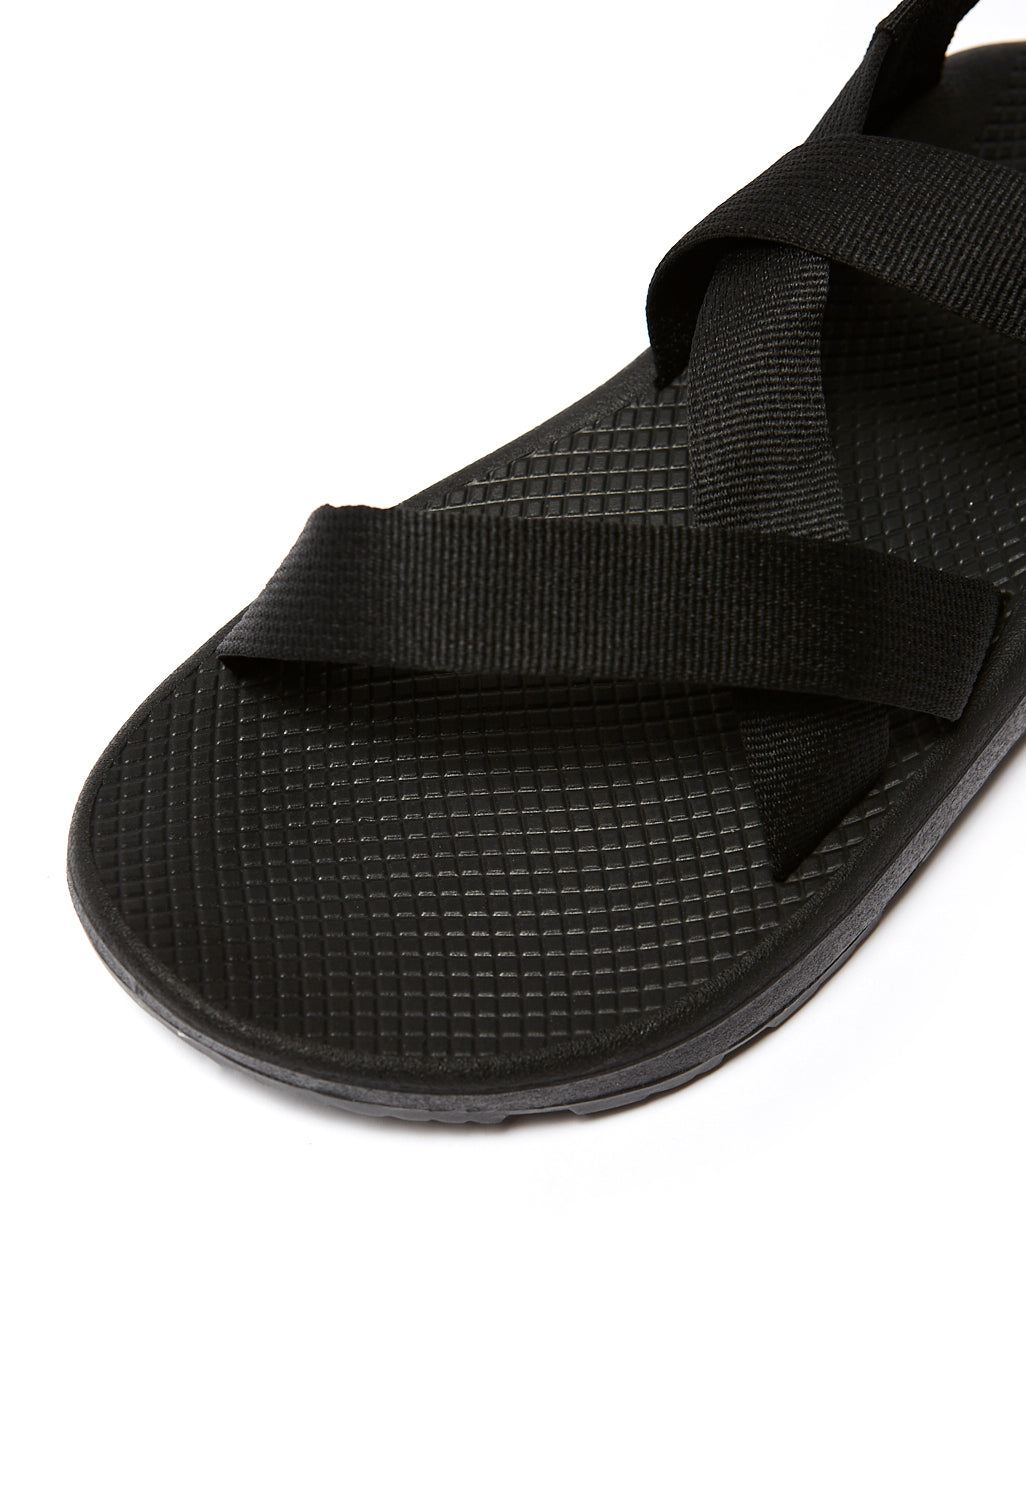 Chaco Men's Z Cloud Sandals - Solid Black